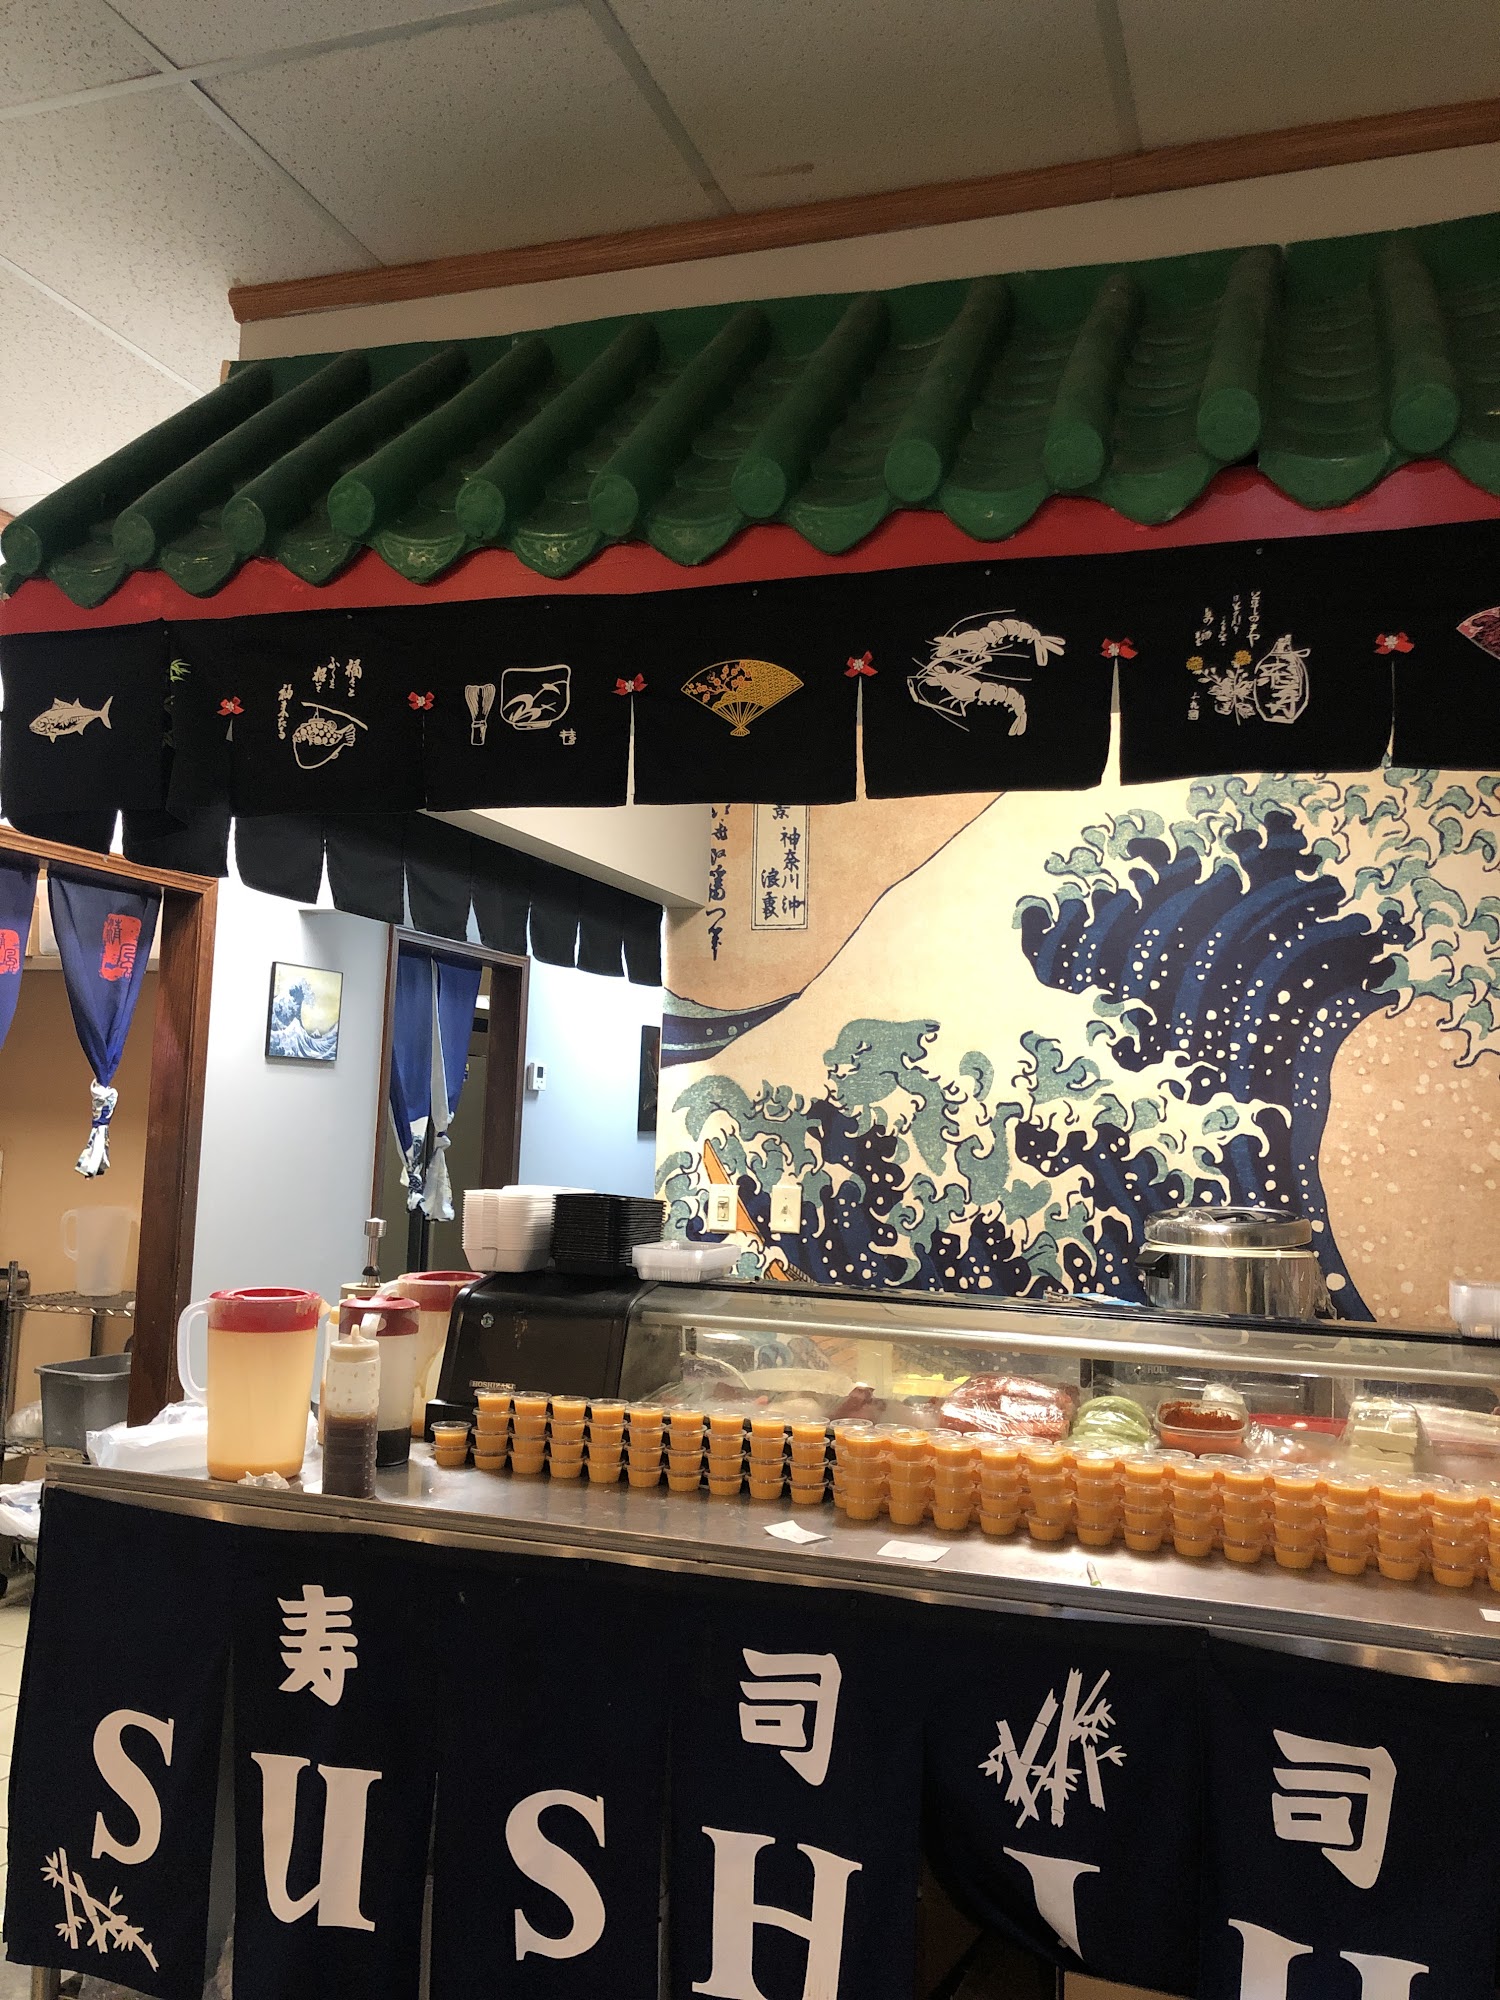 Osaka Sushi Bar